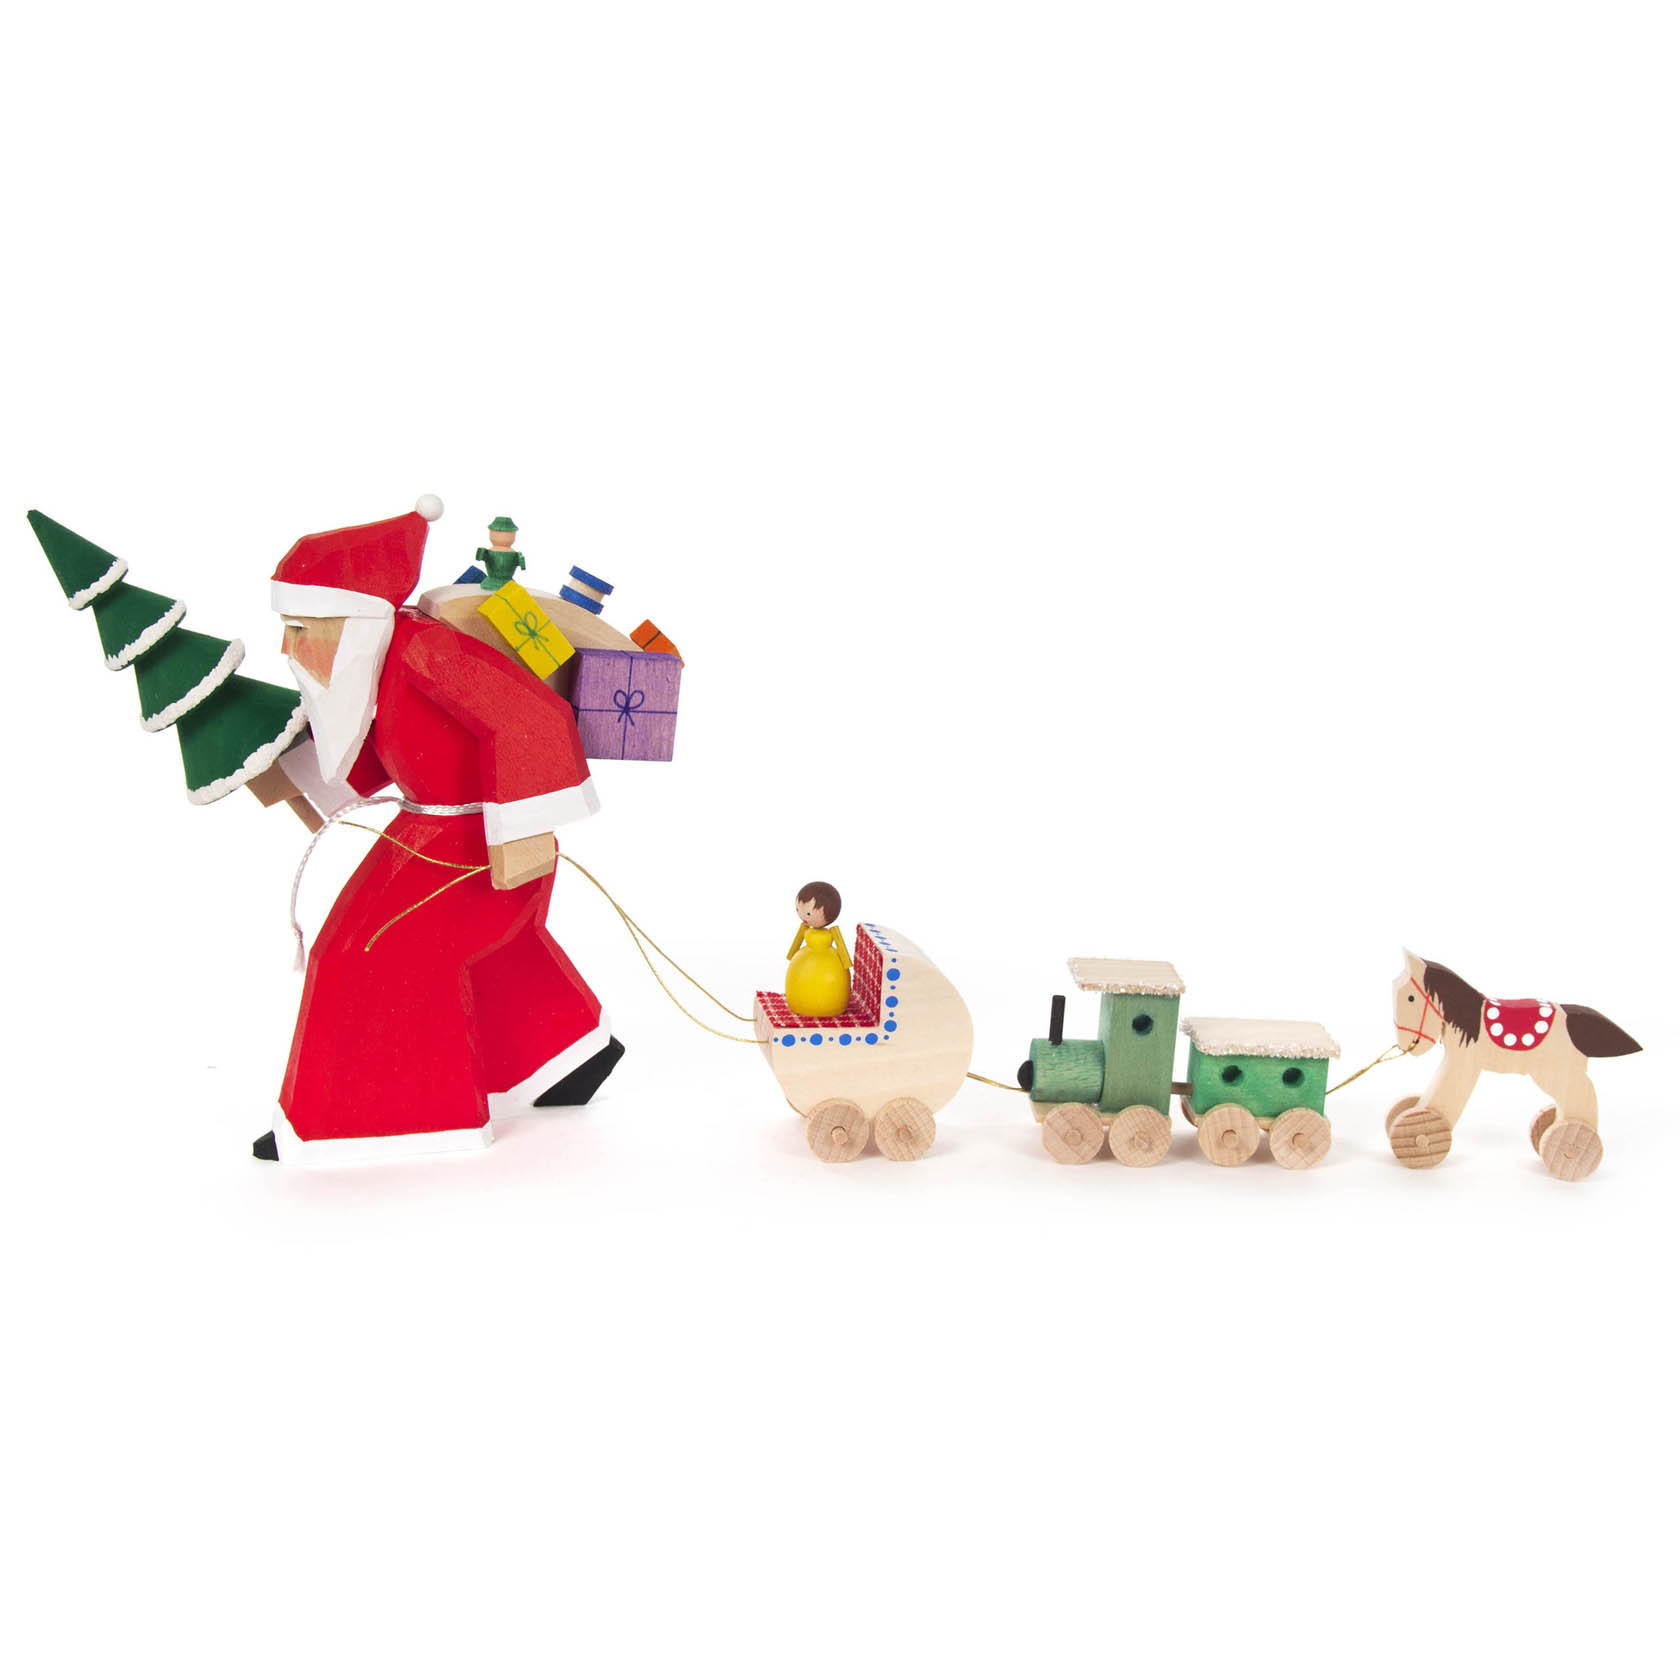 Weihnachtsmann mit Spielzeugzug, geschnitzt